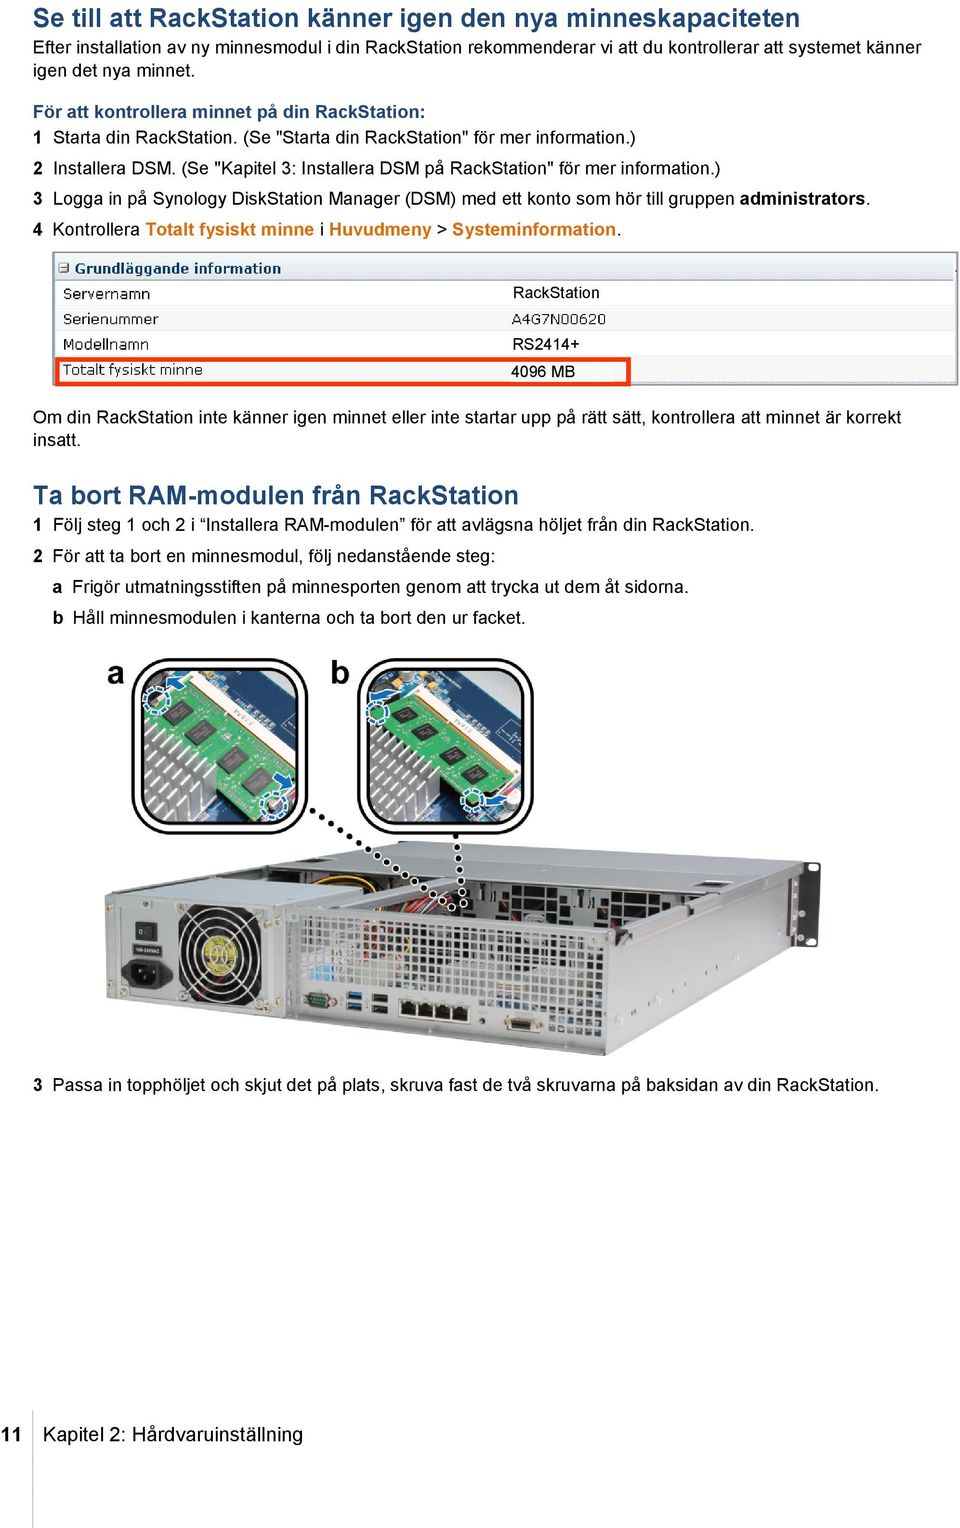 (Se "Kapitel 3: Installera DSM på RackStation" för mer information.) 3 Logga in på Synology DiskStation Manager (DSM) med ett konto som hör till gruppen administrators.